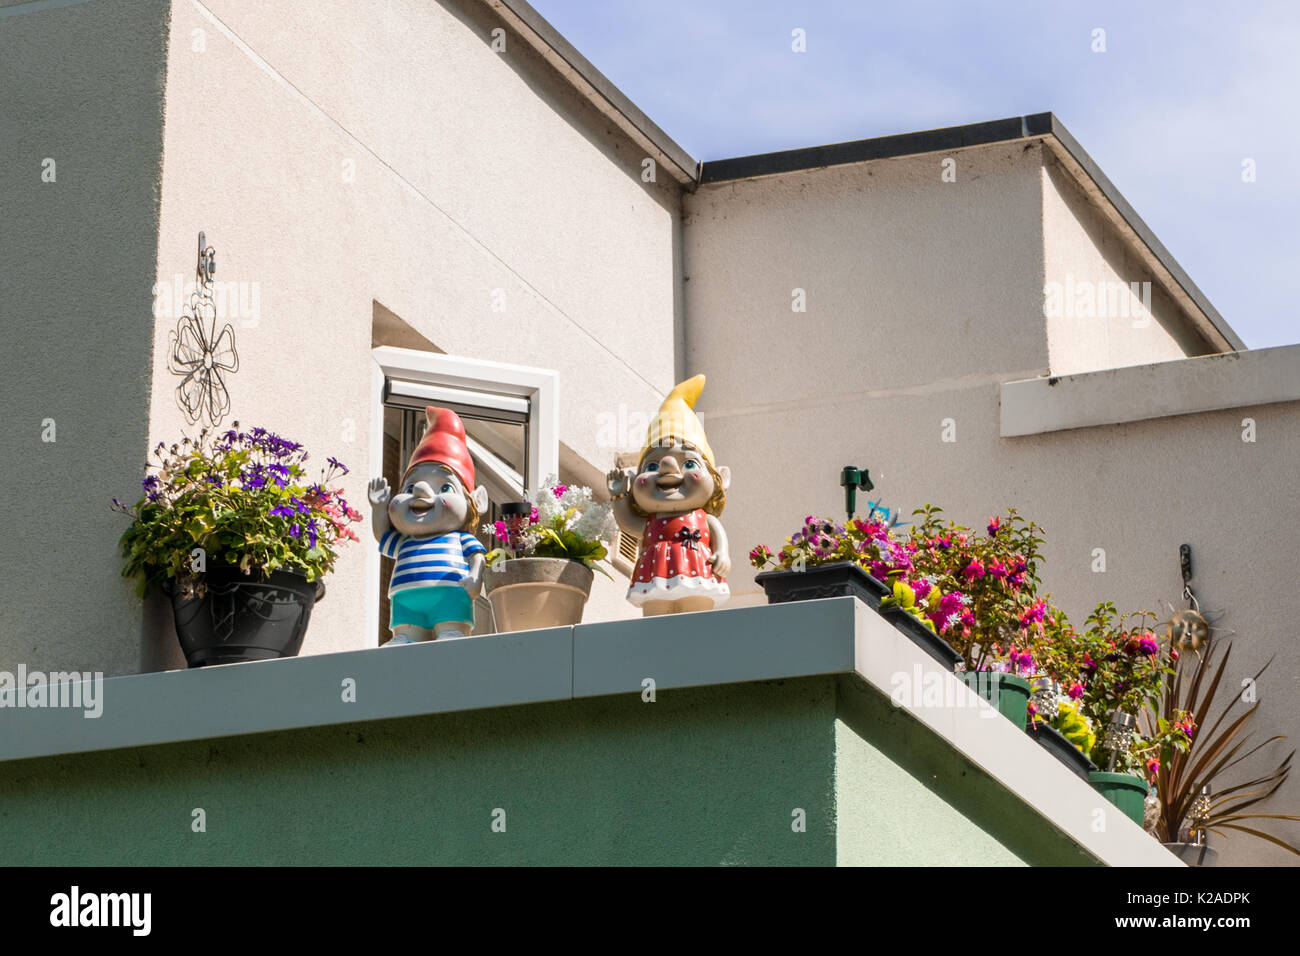 Dos coloridos enanos de jardín en un balcón Foto de stock